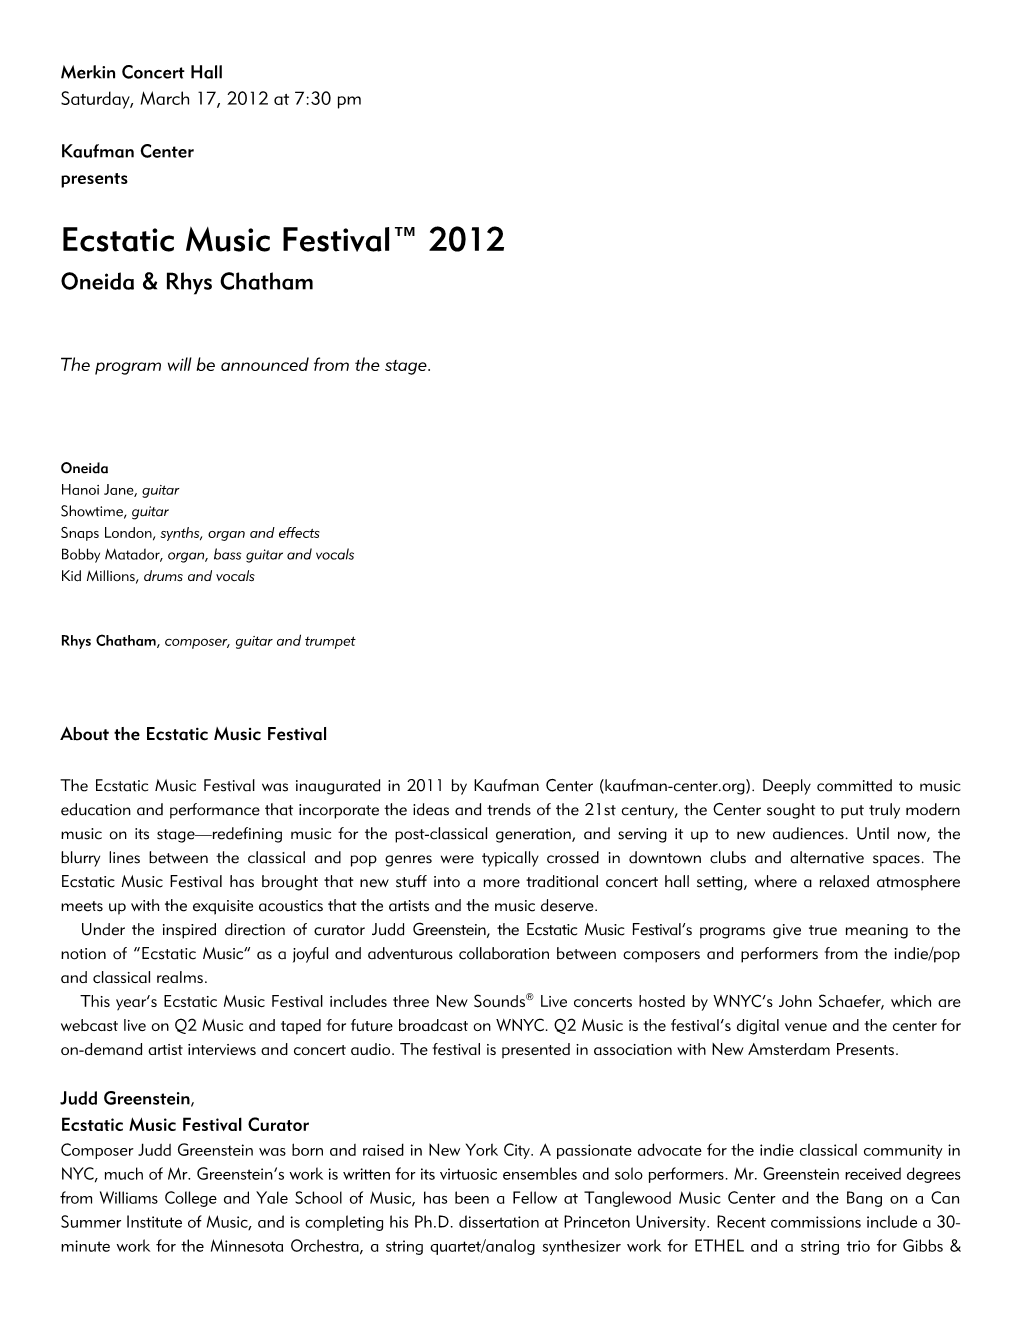 Ecstatic Music Festival™ 2012 Oneida & Rhys Chatham